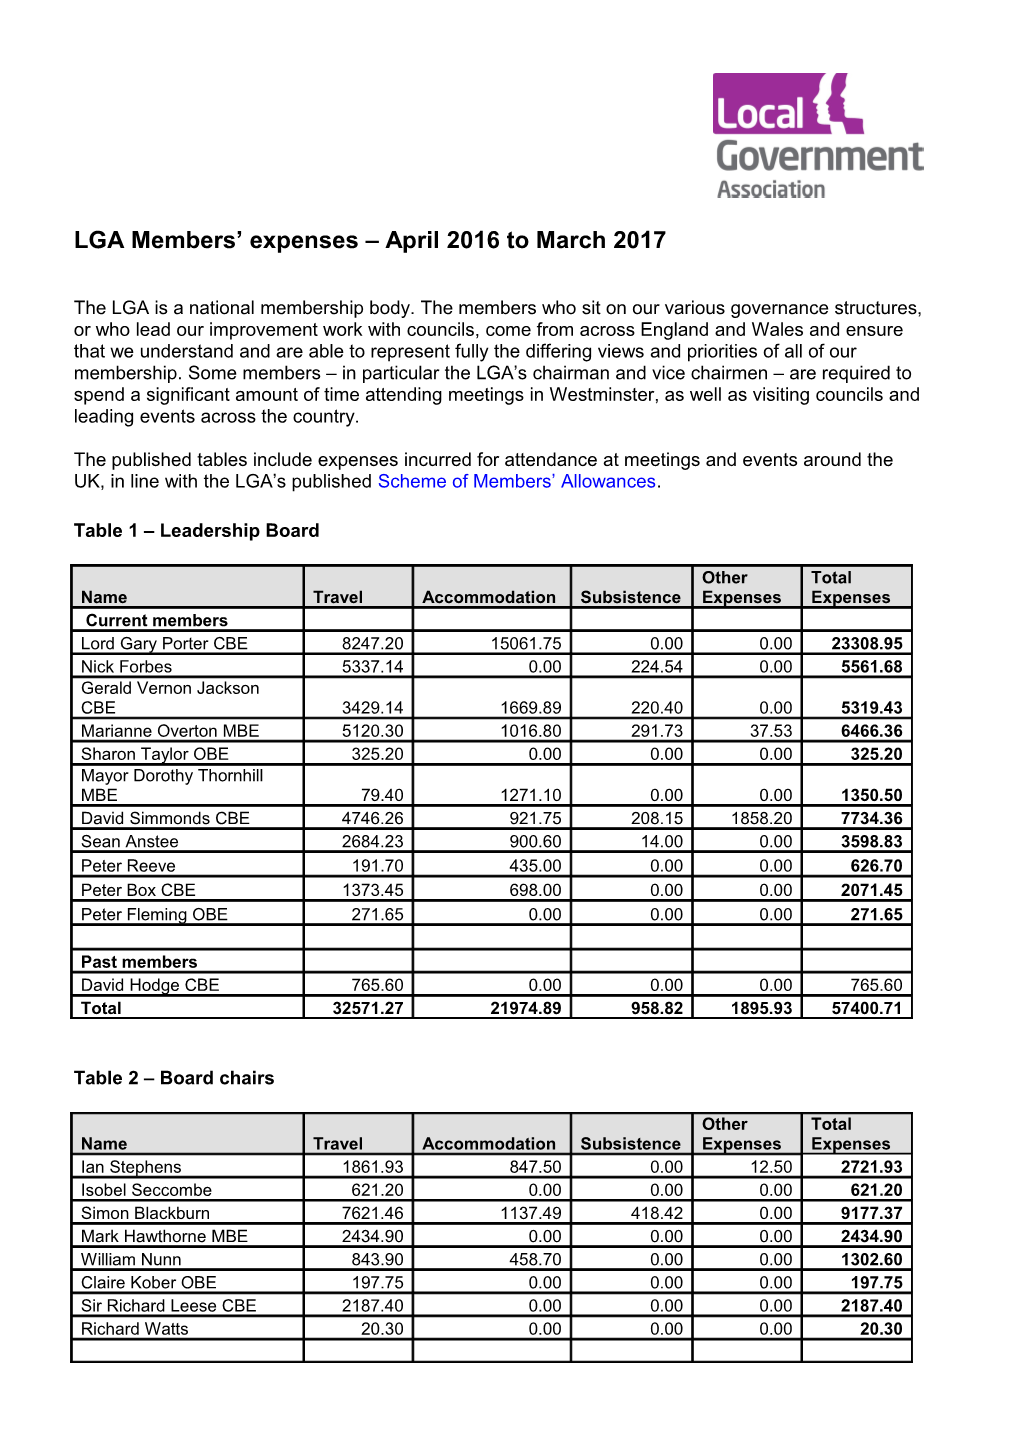 LGA Members Expenses